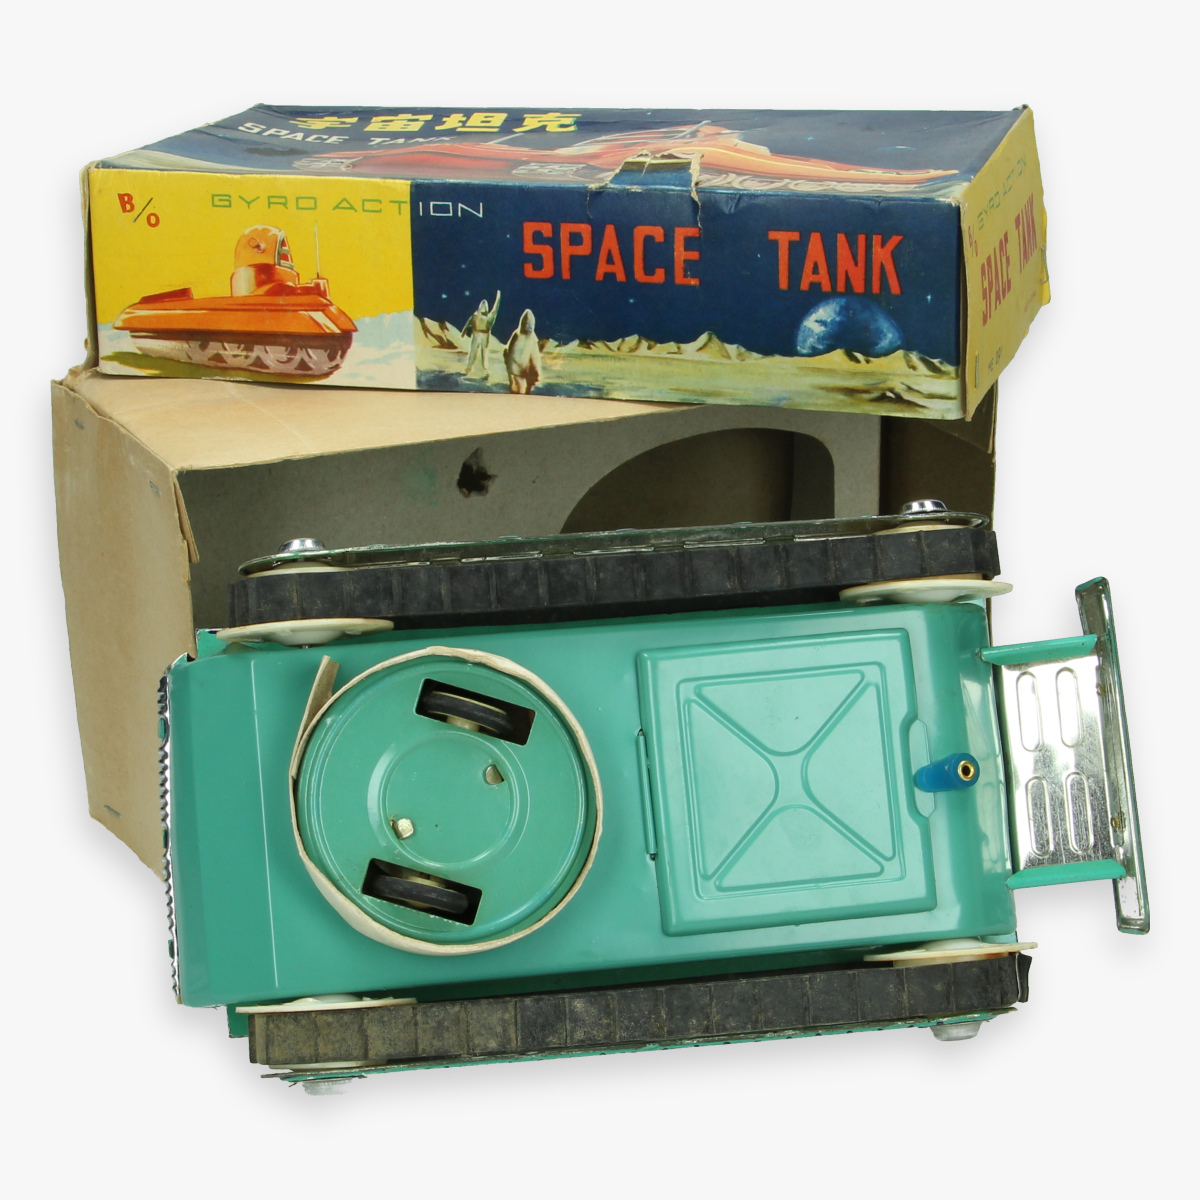 Afbeeldingen van rare red china tin toy jaren 60 me - 091 space tank in box